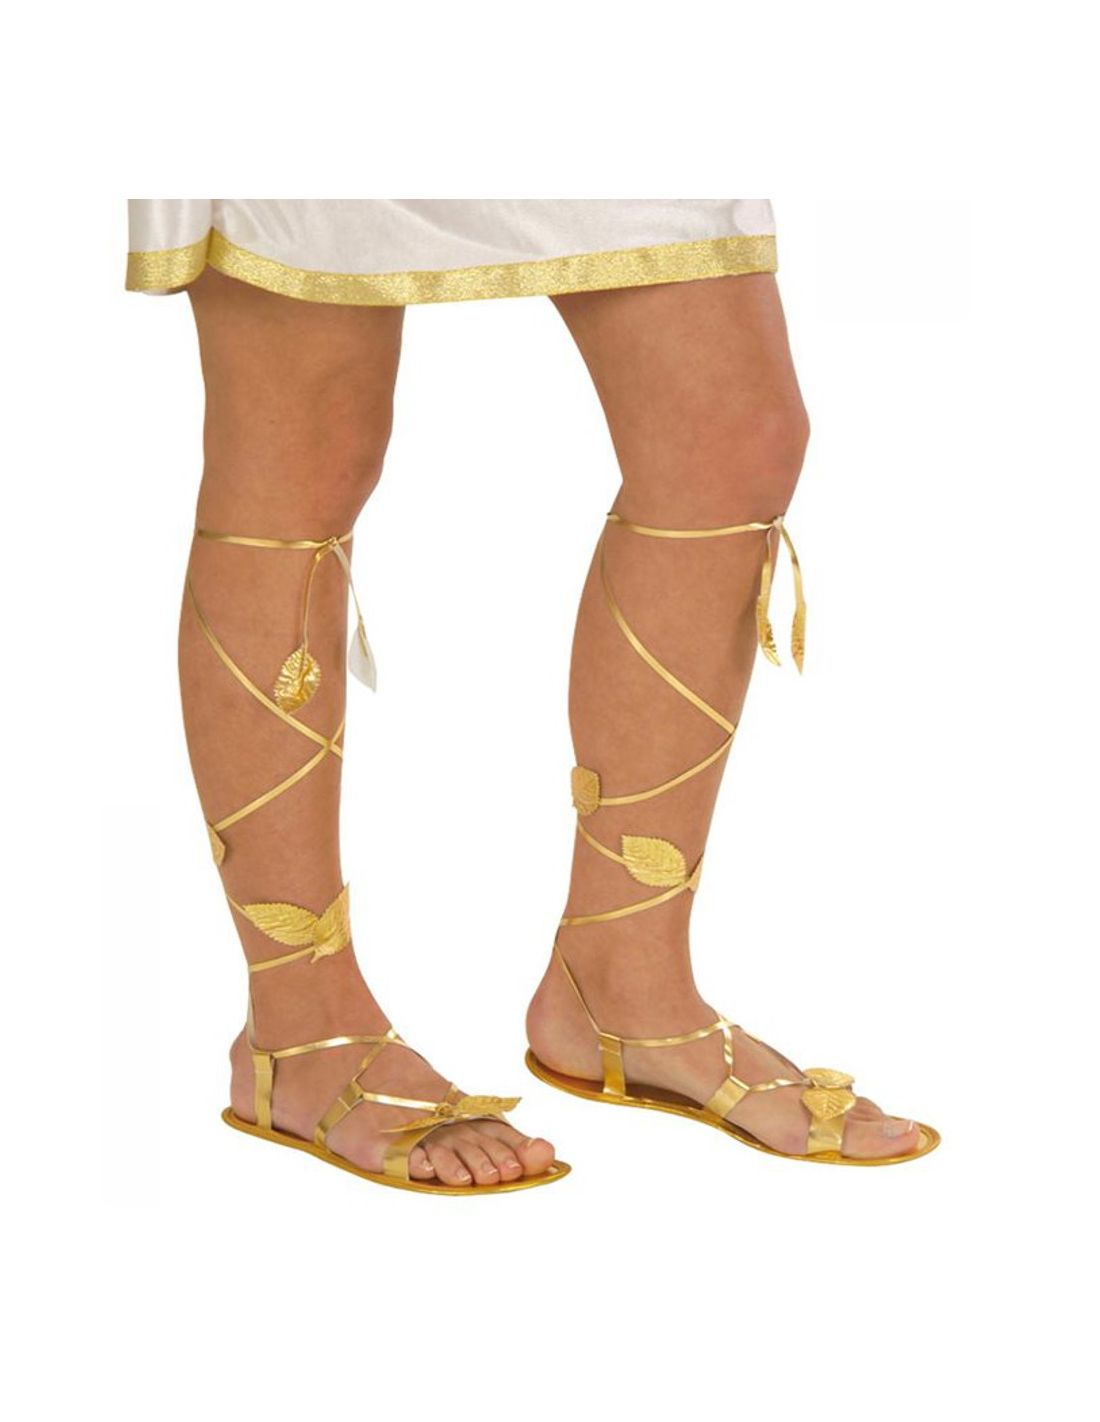 Sandalias o Egipcias | Tienda de Disfraces Online | Mercad...